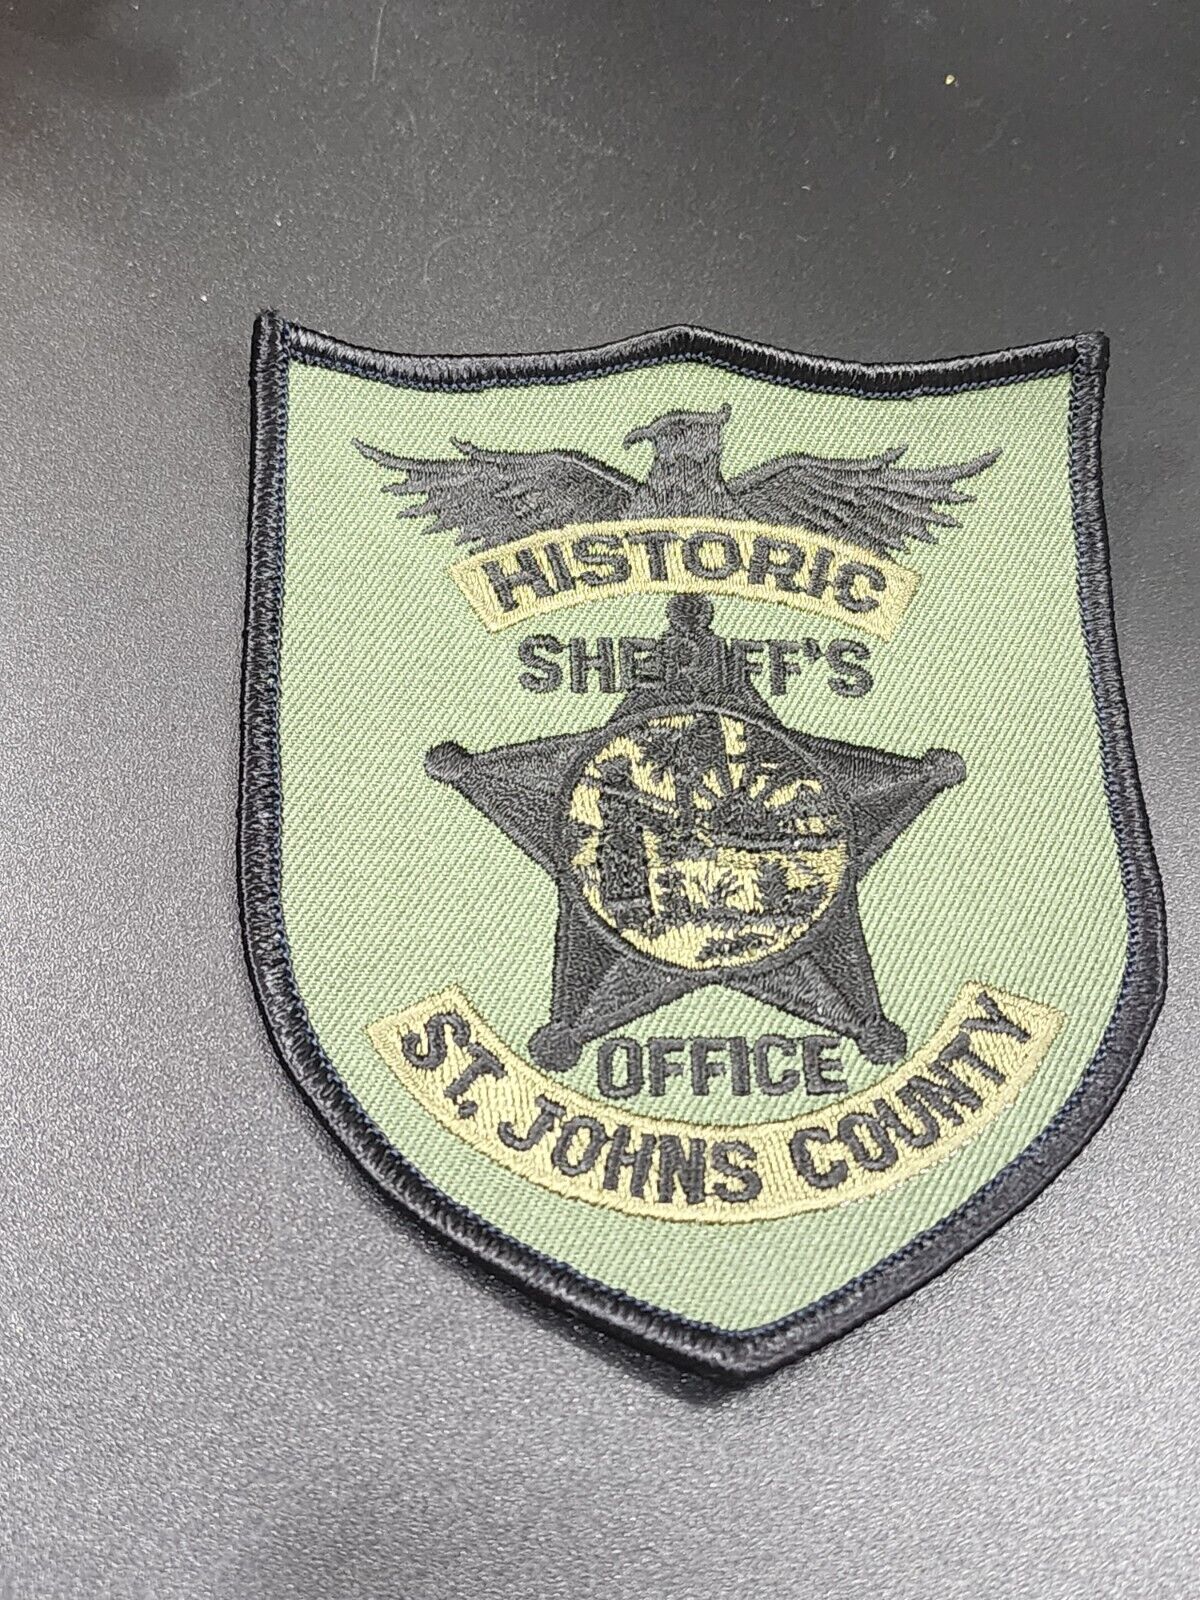 St John's County Sheriffs Office Patch